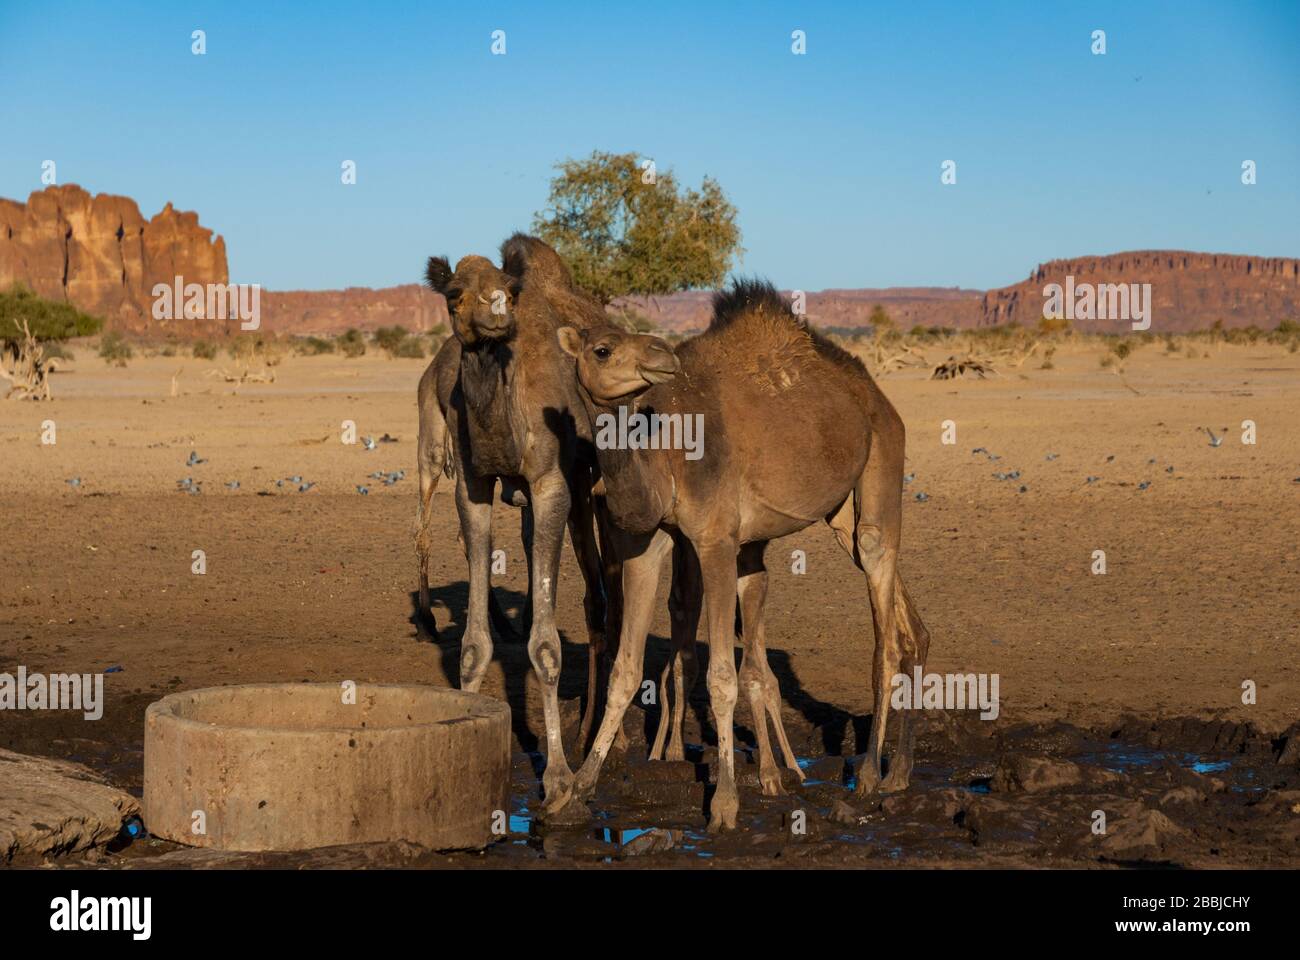 Les chameaux se tiennent à côté du puits du désert, oasis au Sahara, Tchad, Afrique Banque D'Images